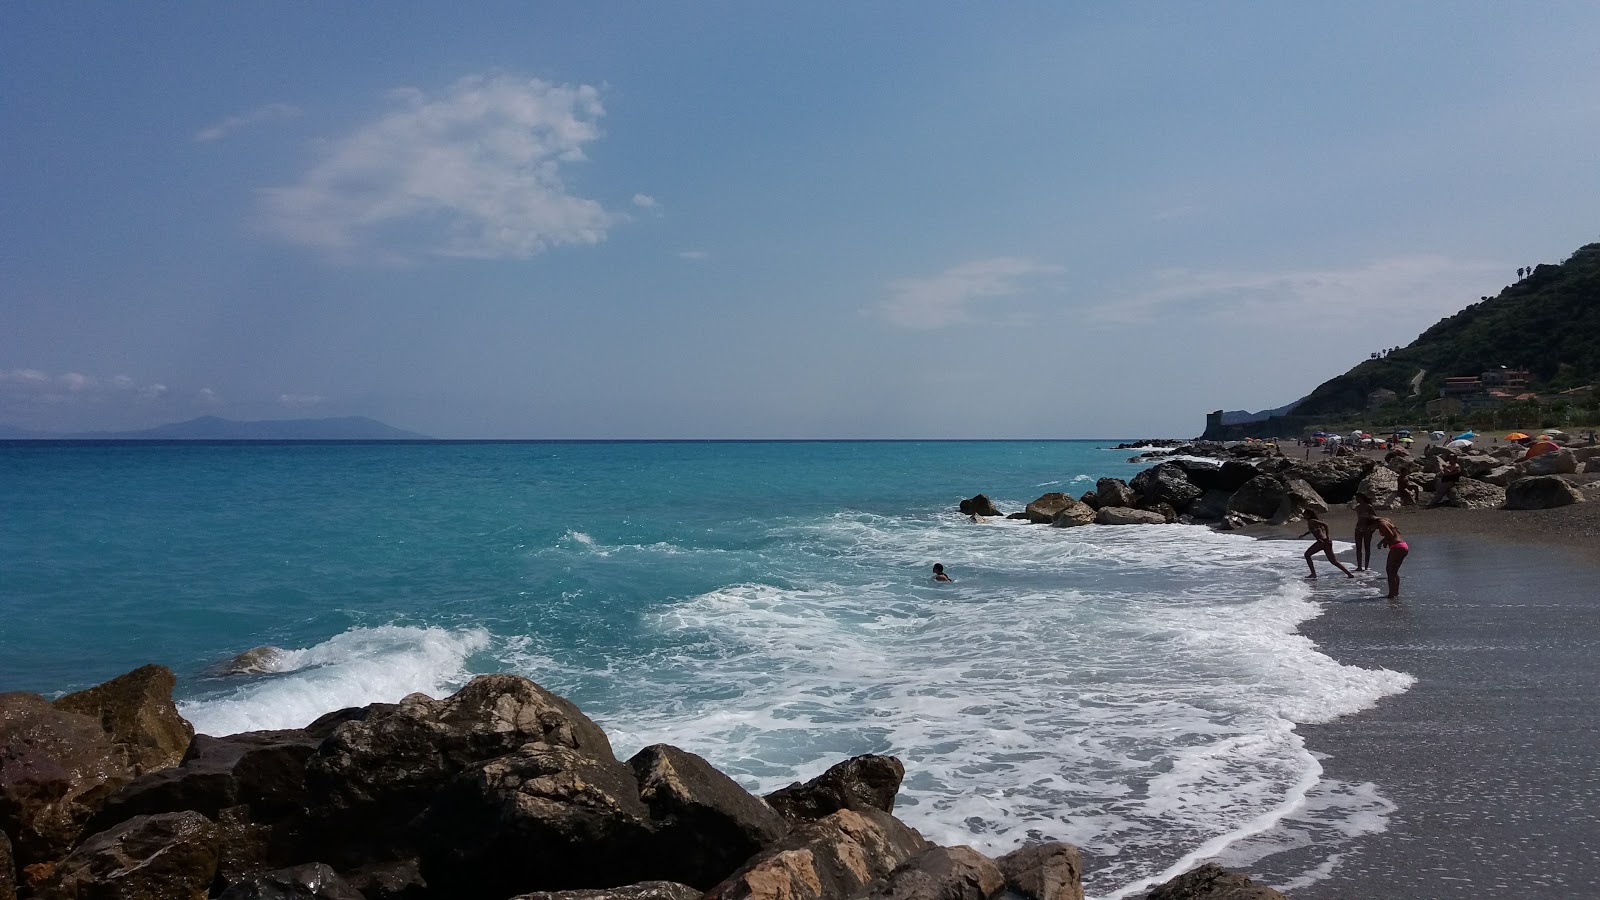 Fotografija Gliaca beach priljubljeno mesto med poznavalci sprostitve